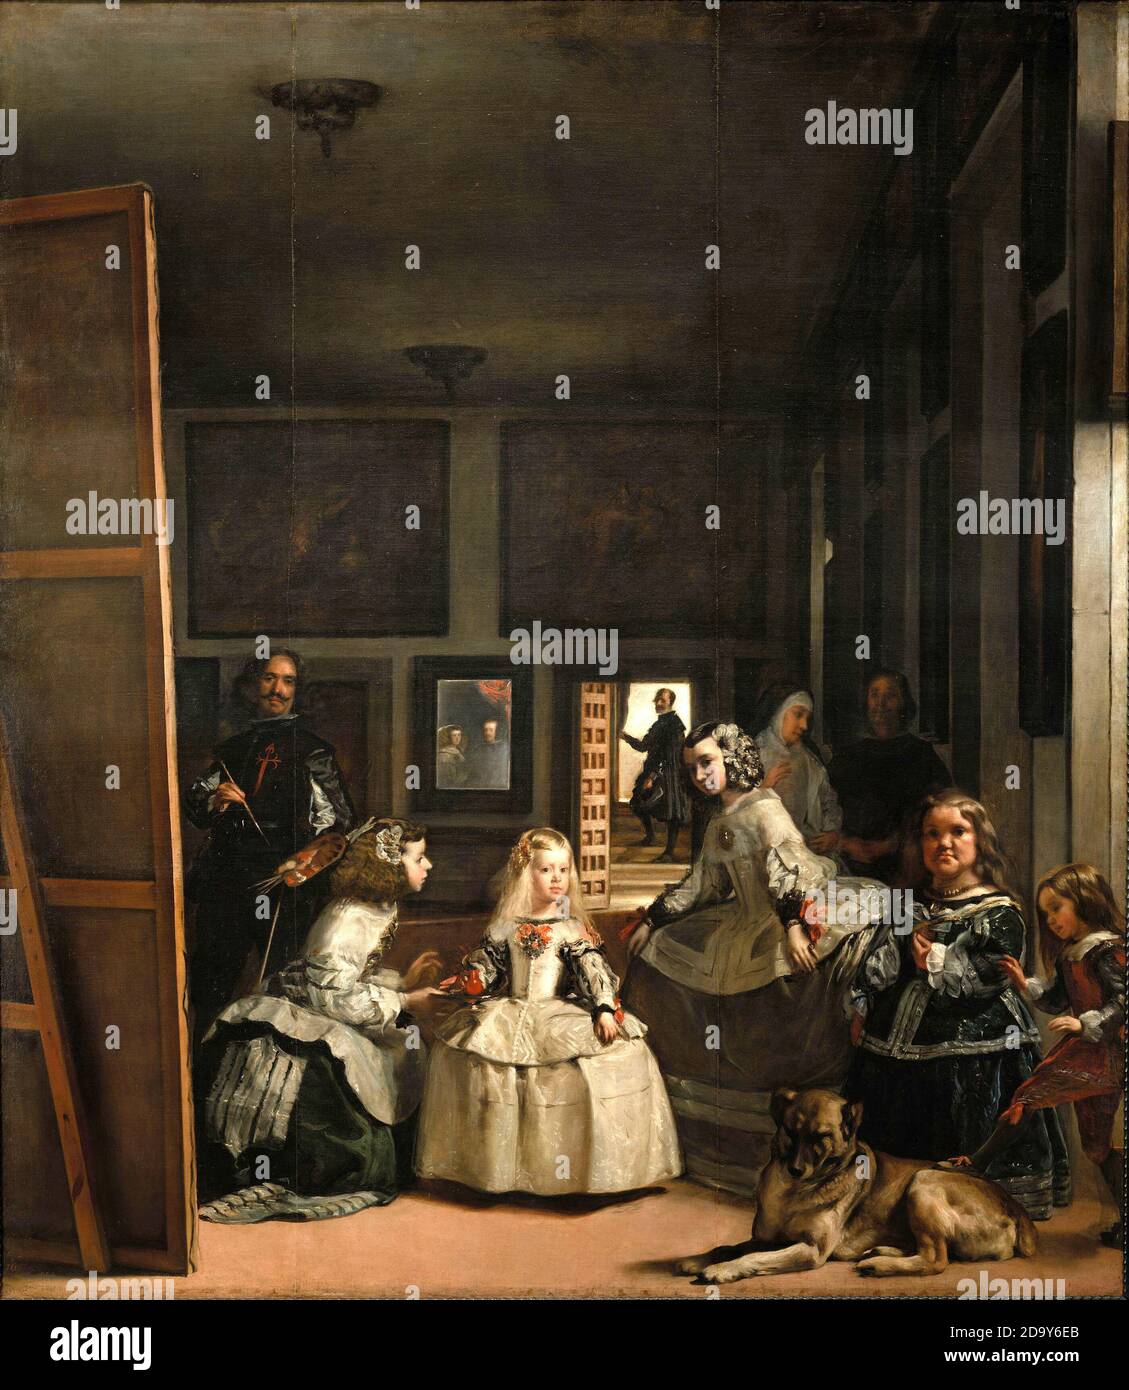 Title: Las Meninas or The Family of Philip IV Creator: Diego Rodriguez de Silva y Velazquez Date: c.1656 Medium: Oil on canvas Dimension: 316 x 276 cms Location: Prado, Madrid Stock Photo